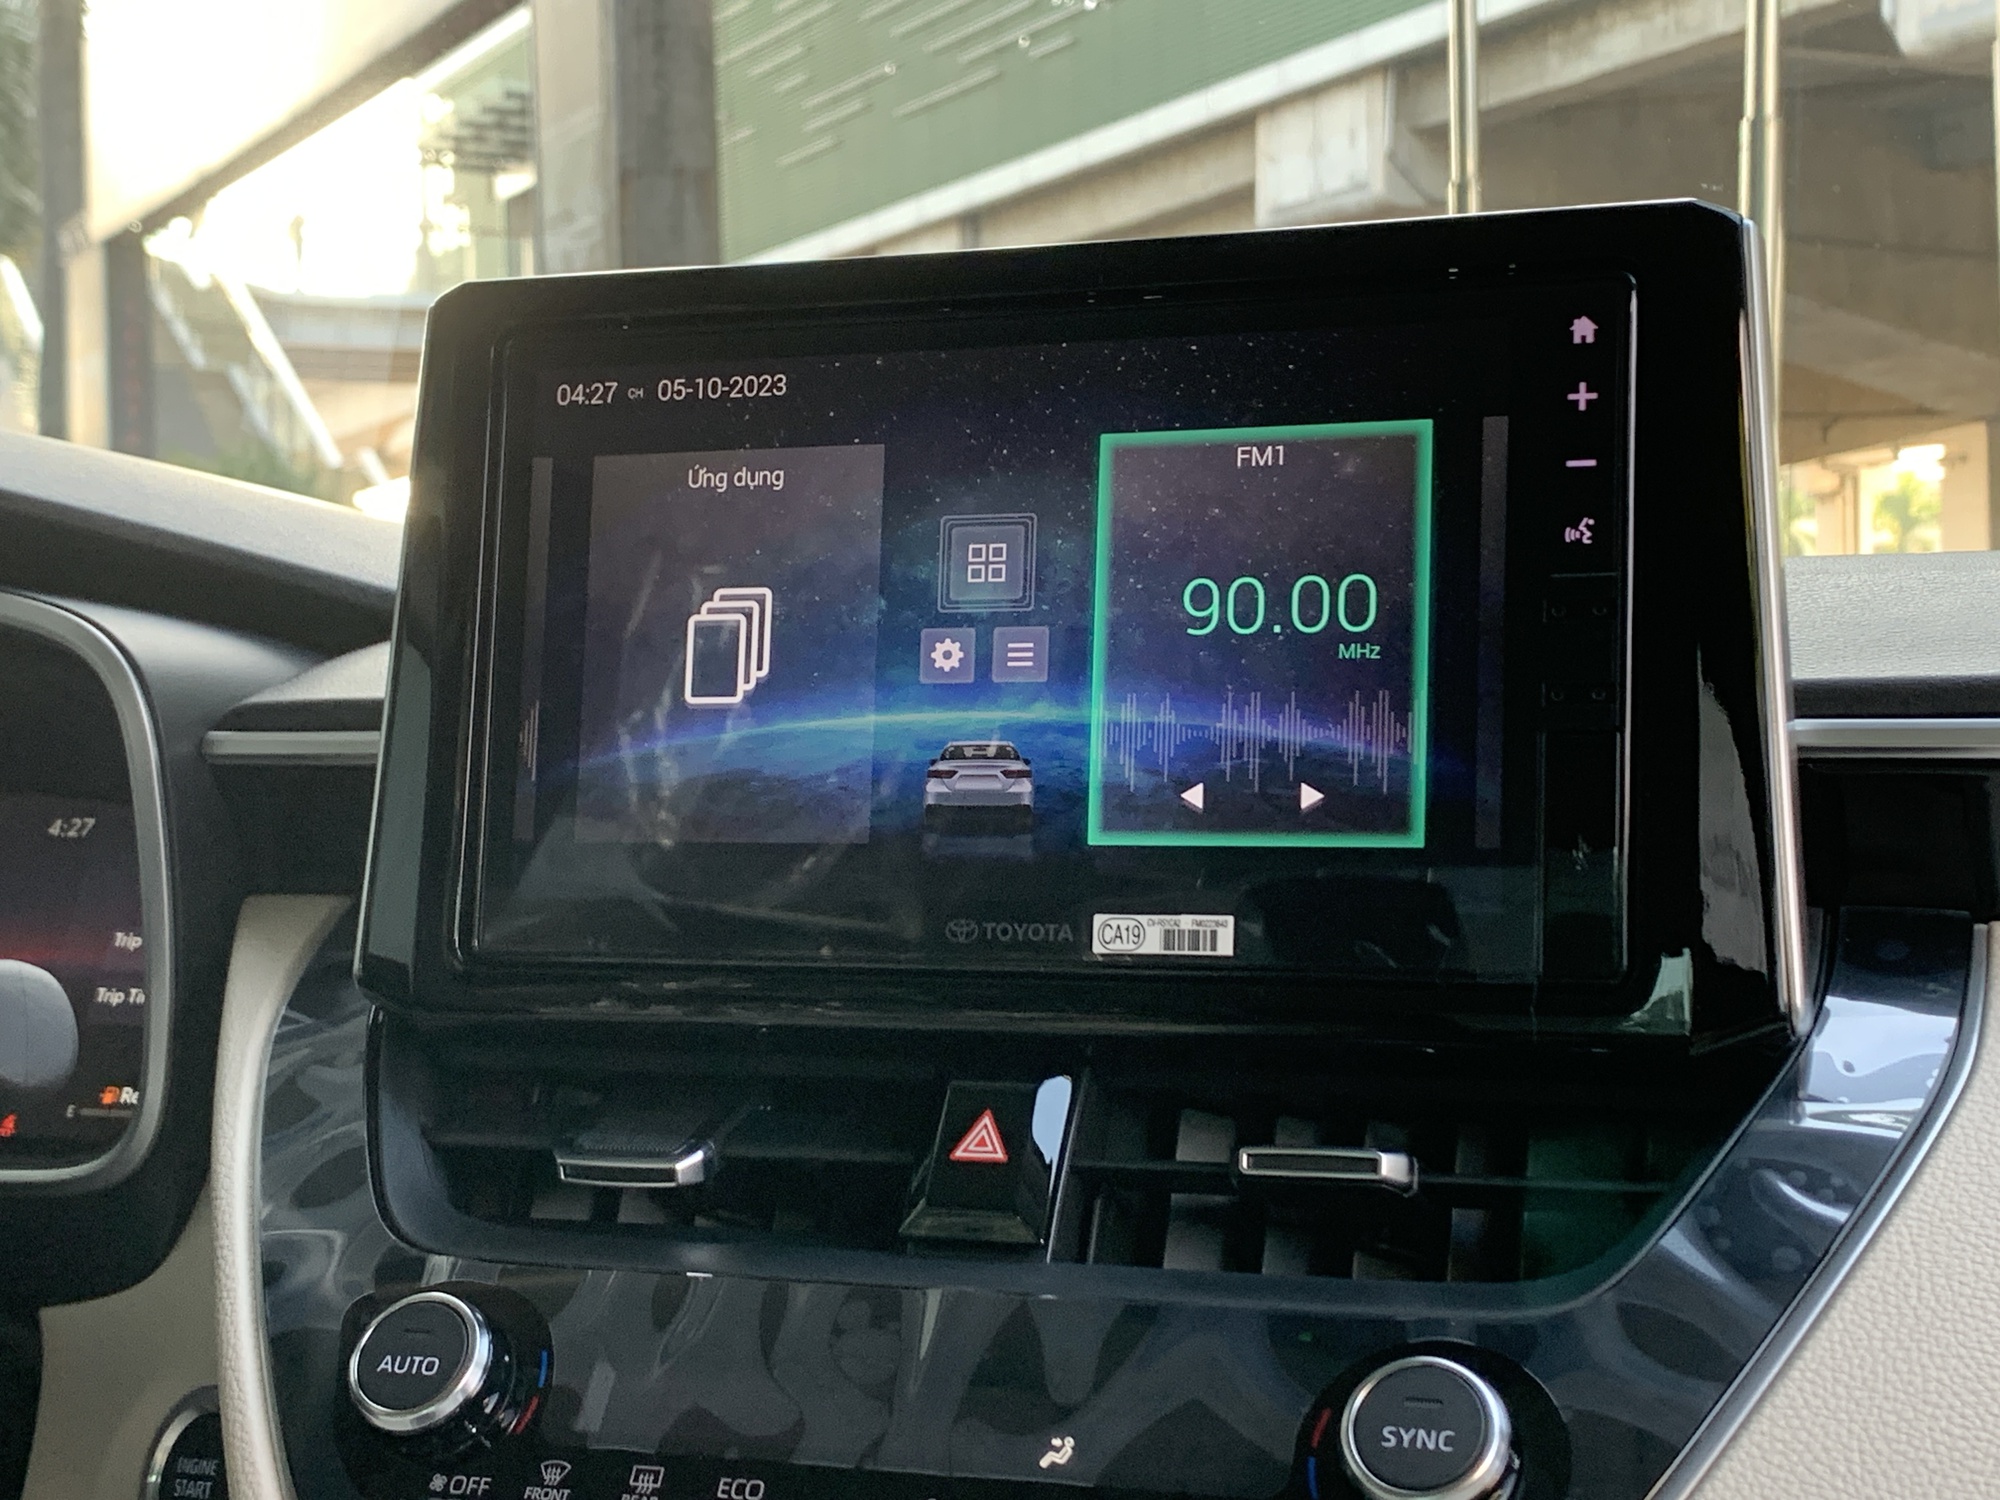 Cận cảnh Toyota Corolla Altis 2023 vừa về đại lý: Bổ sung trang bị an toàn, có đồng hồ tốc độ 'đỉnh' nhất phân khúc - Ảnh 9.